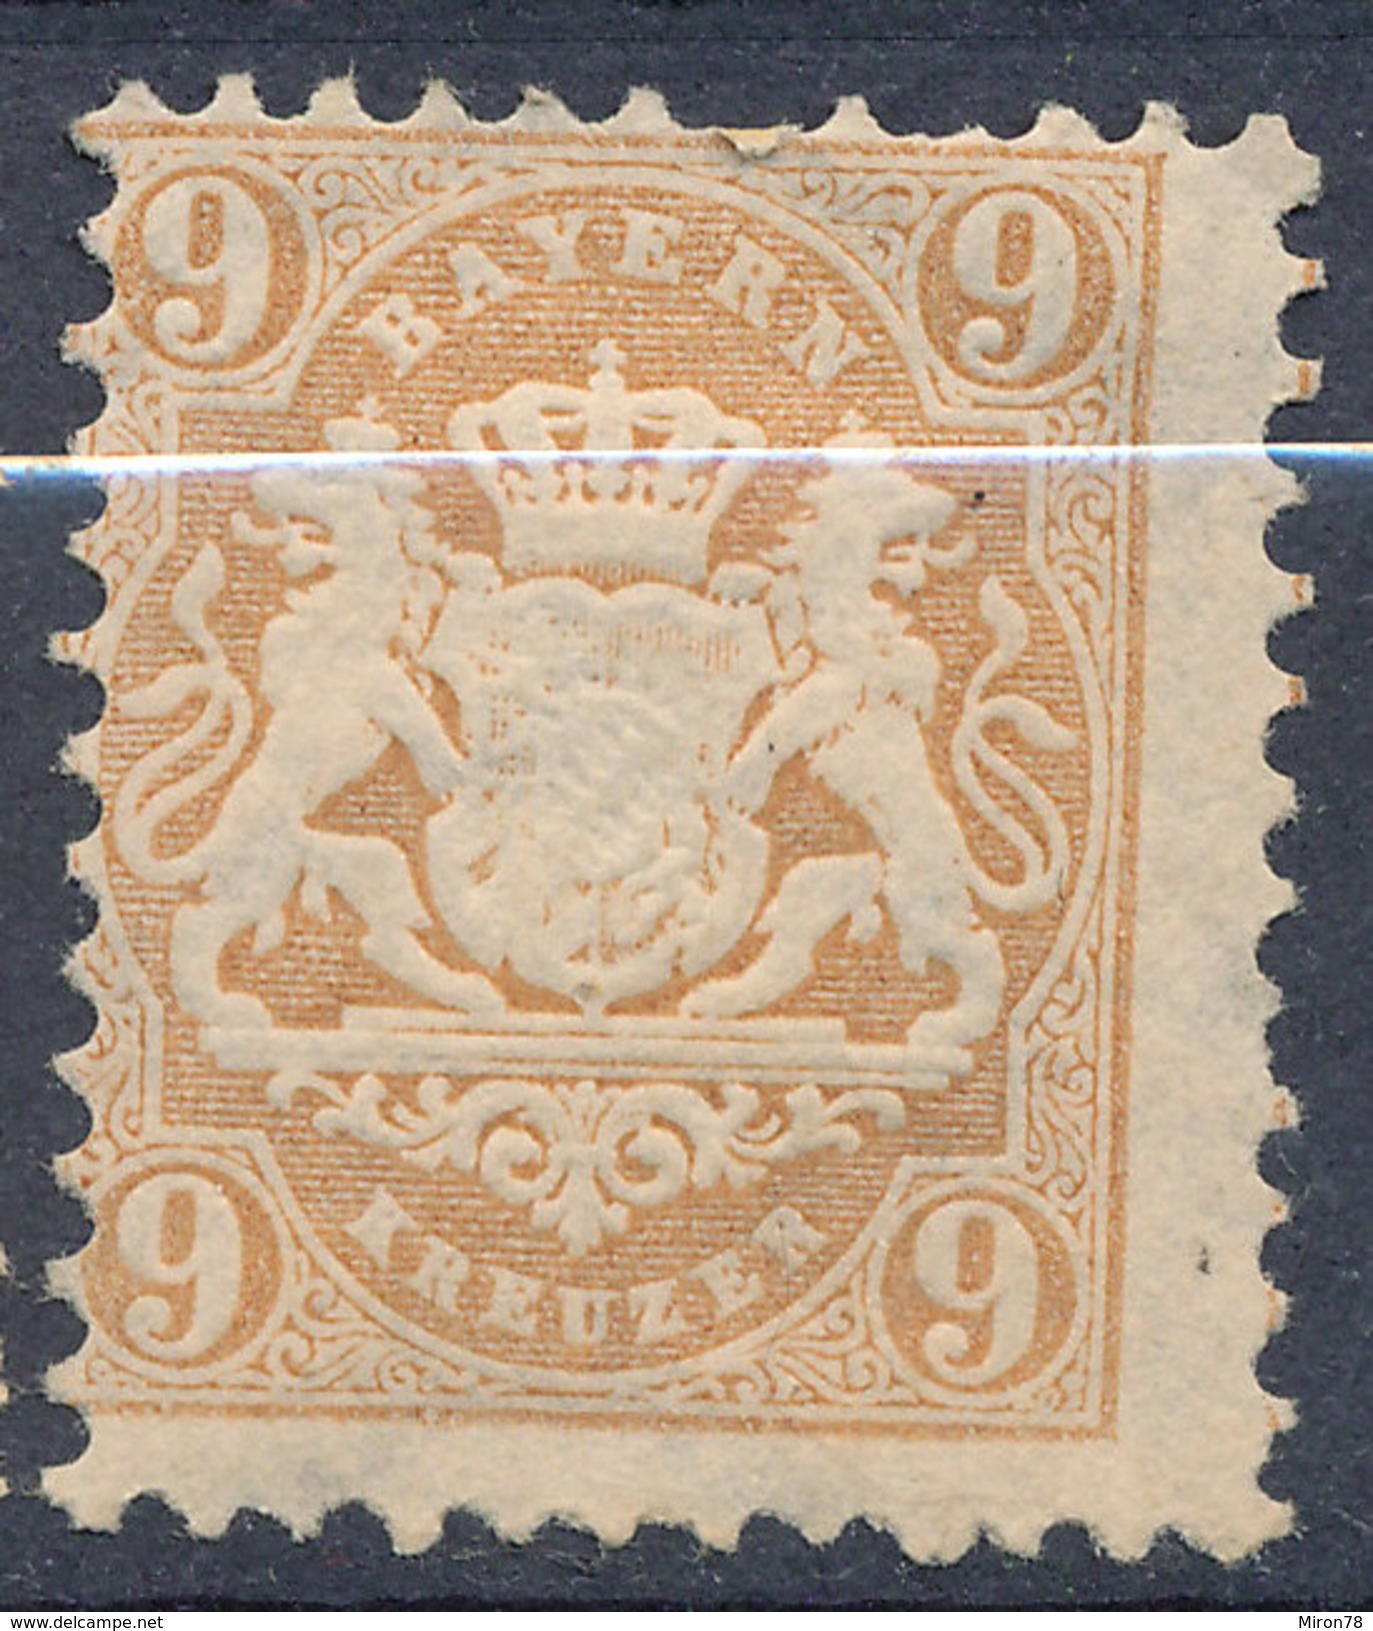 Stamp Bavaria 1870-75? 9kr Mint Lot#75 - Mint